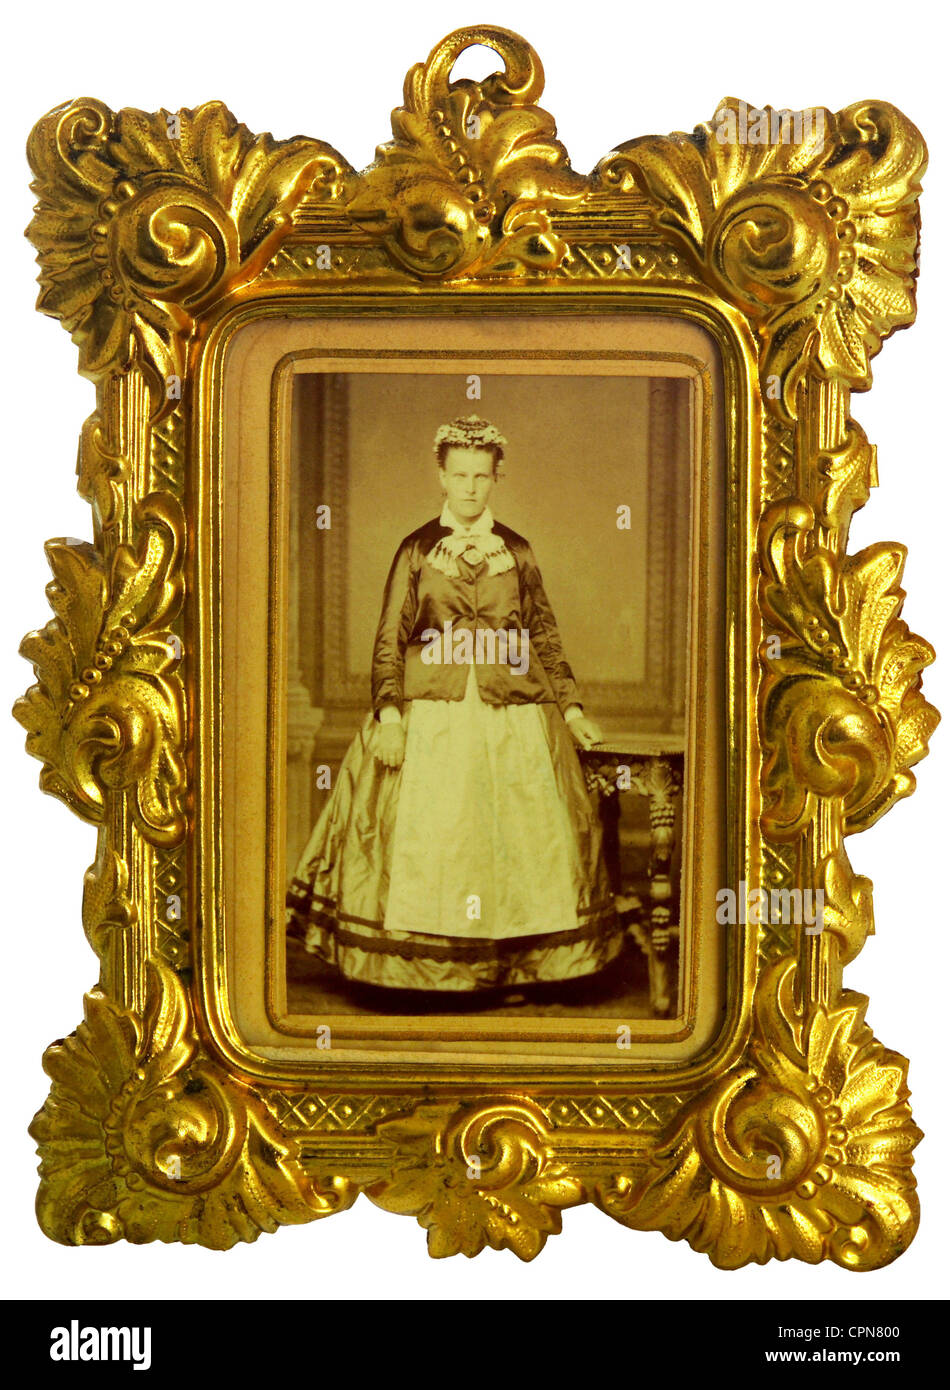 Personnes, femmes, image d'une femme dans un cadre d'image dorée, laiton forgé, plaqué or, Allemagne, vers 1875, droits additionnels-Clearences-non disponible Banque D'Images